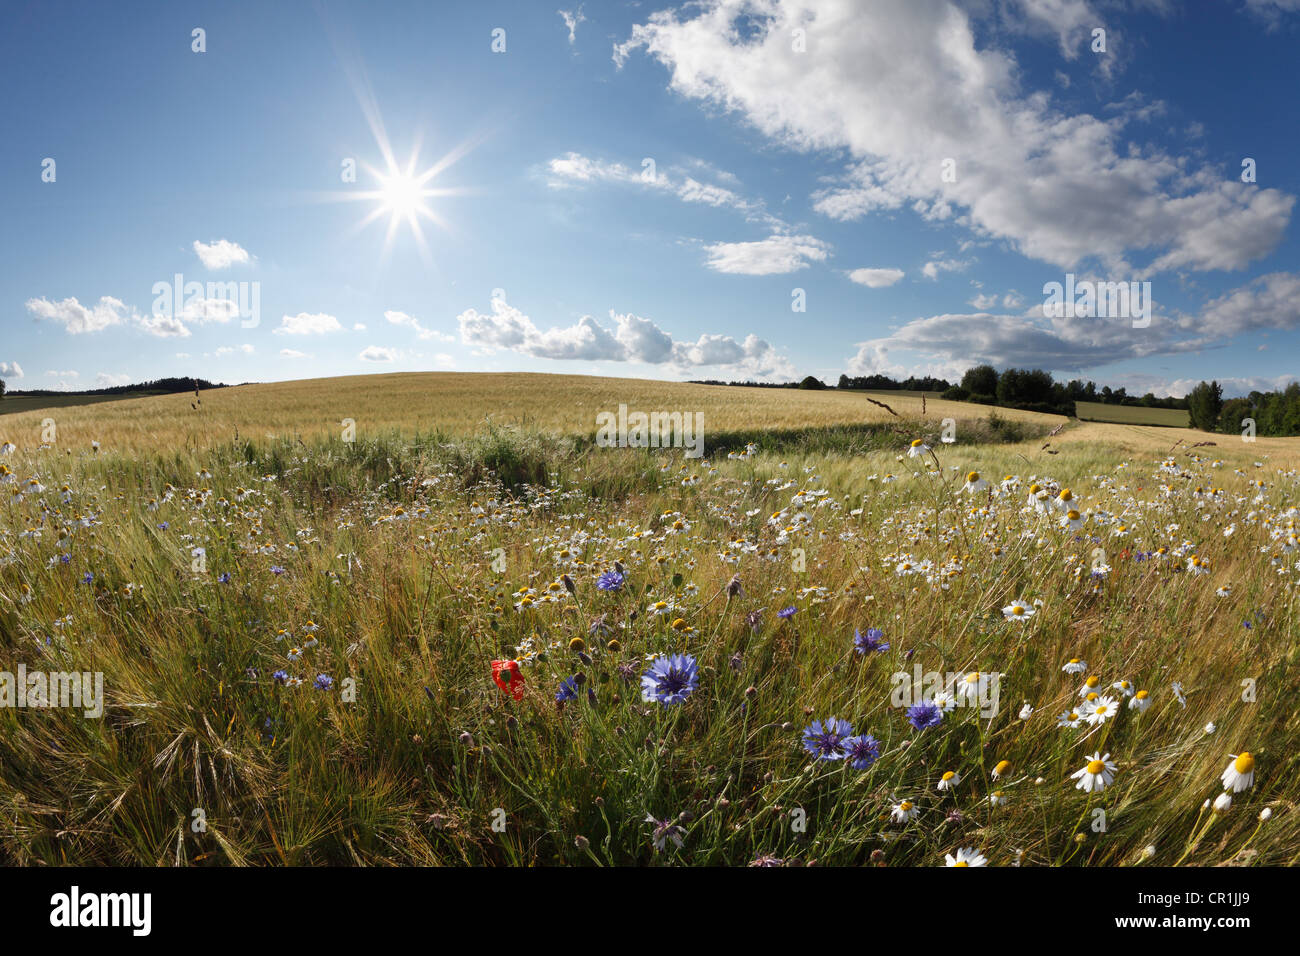 Fleurs sauvages dans un champ de blé, la Suisse franconienne, Sachsendorf, Franconia, Bavaria, Germany, Europe Banque D'Images